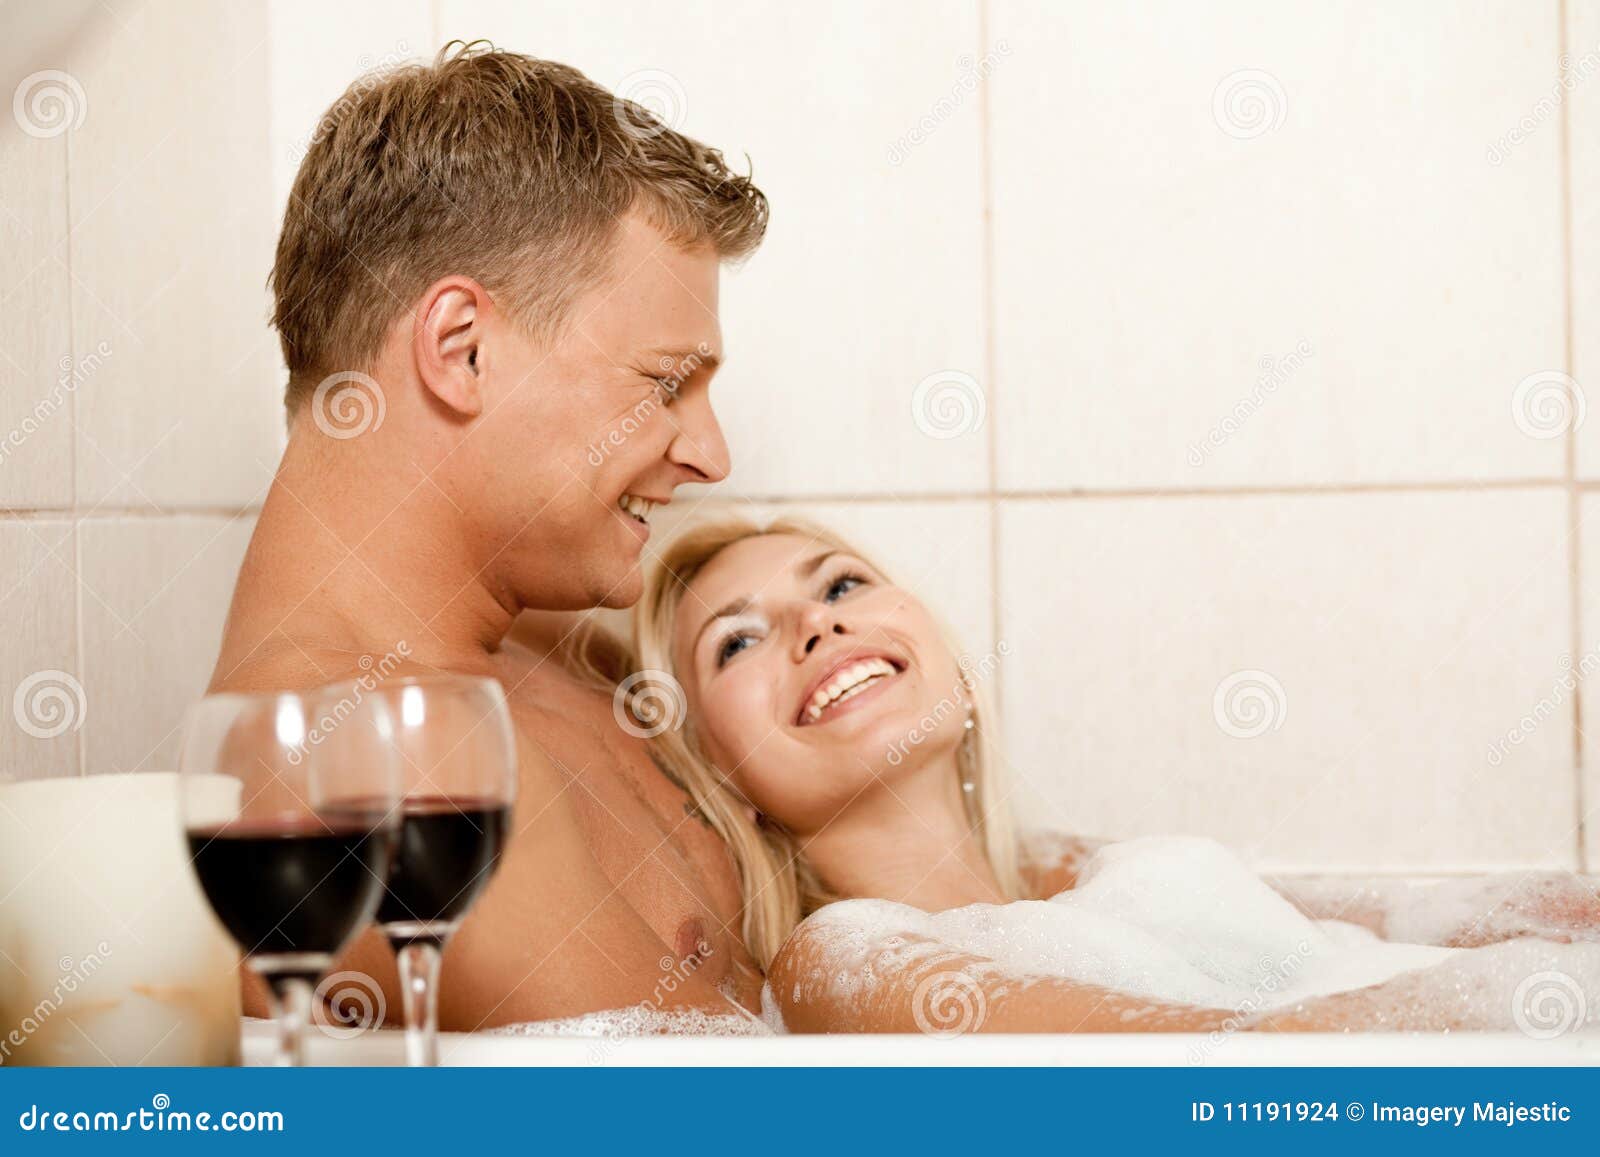 С женой друга в ванне. Мужчина и женщина в ванне. Влюбленные в ванной. В ванной вдвоем. Любовь в джакузи.